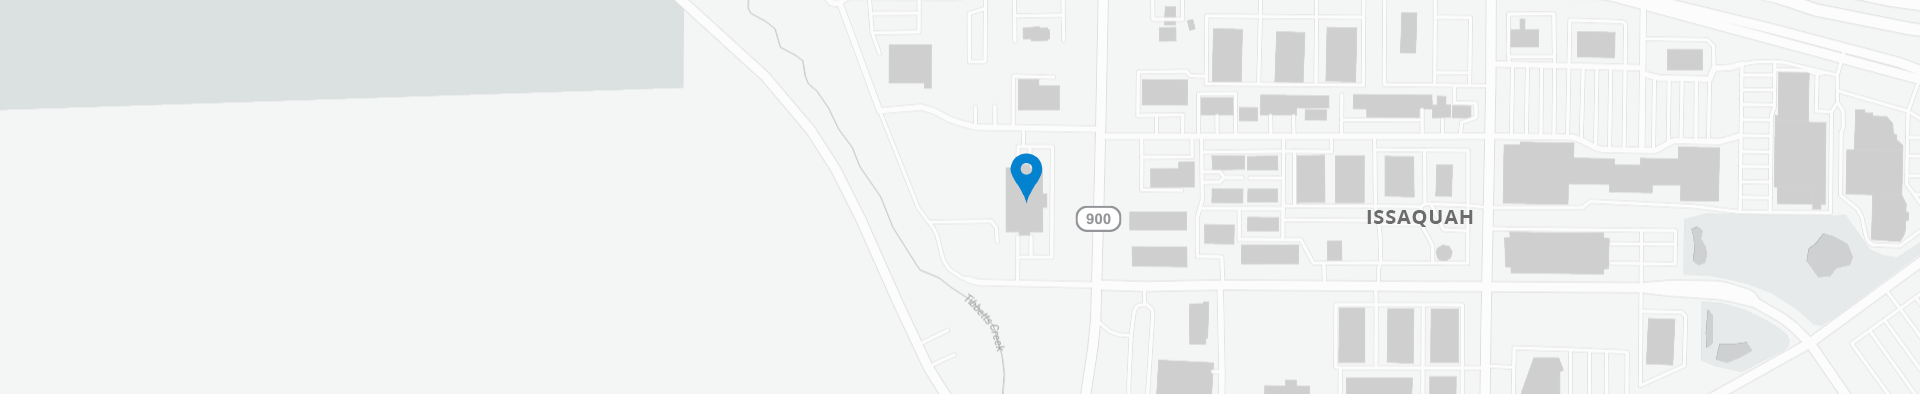 谷歌地图1740 NW Maple，Issaquah，98027